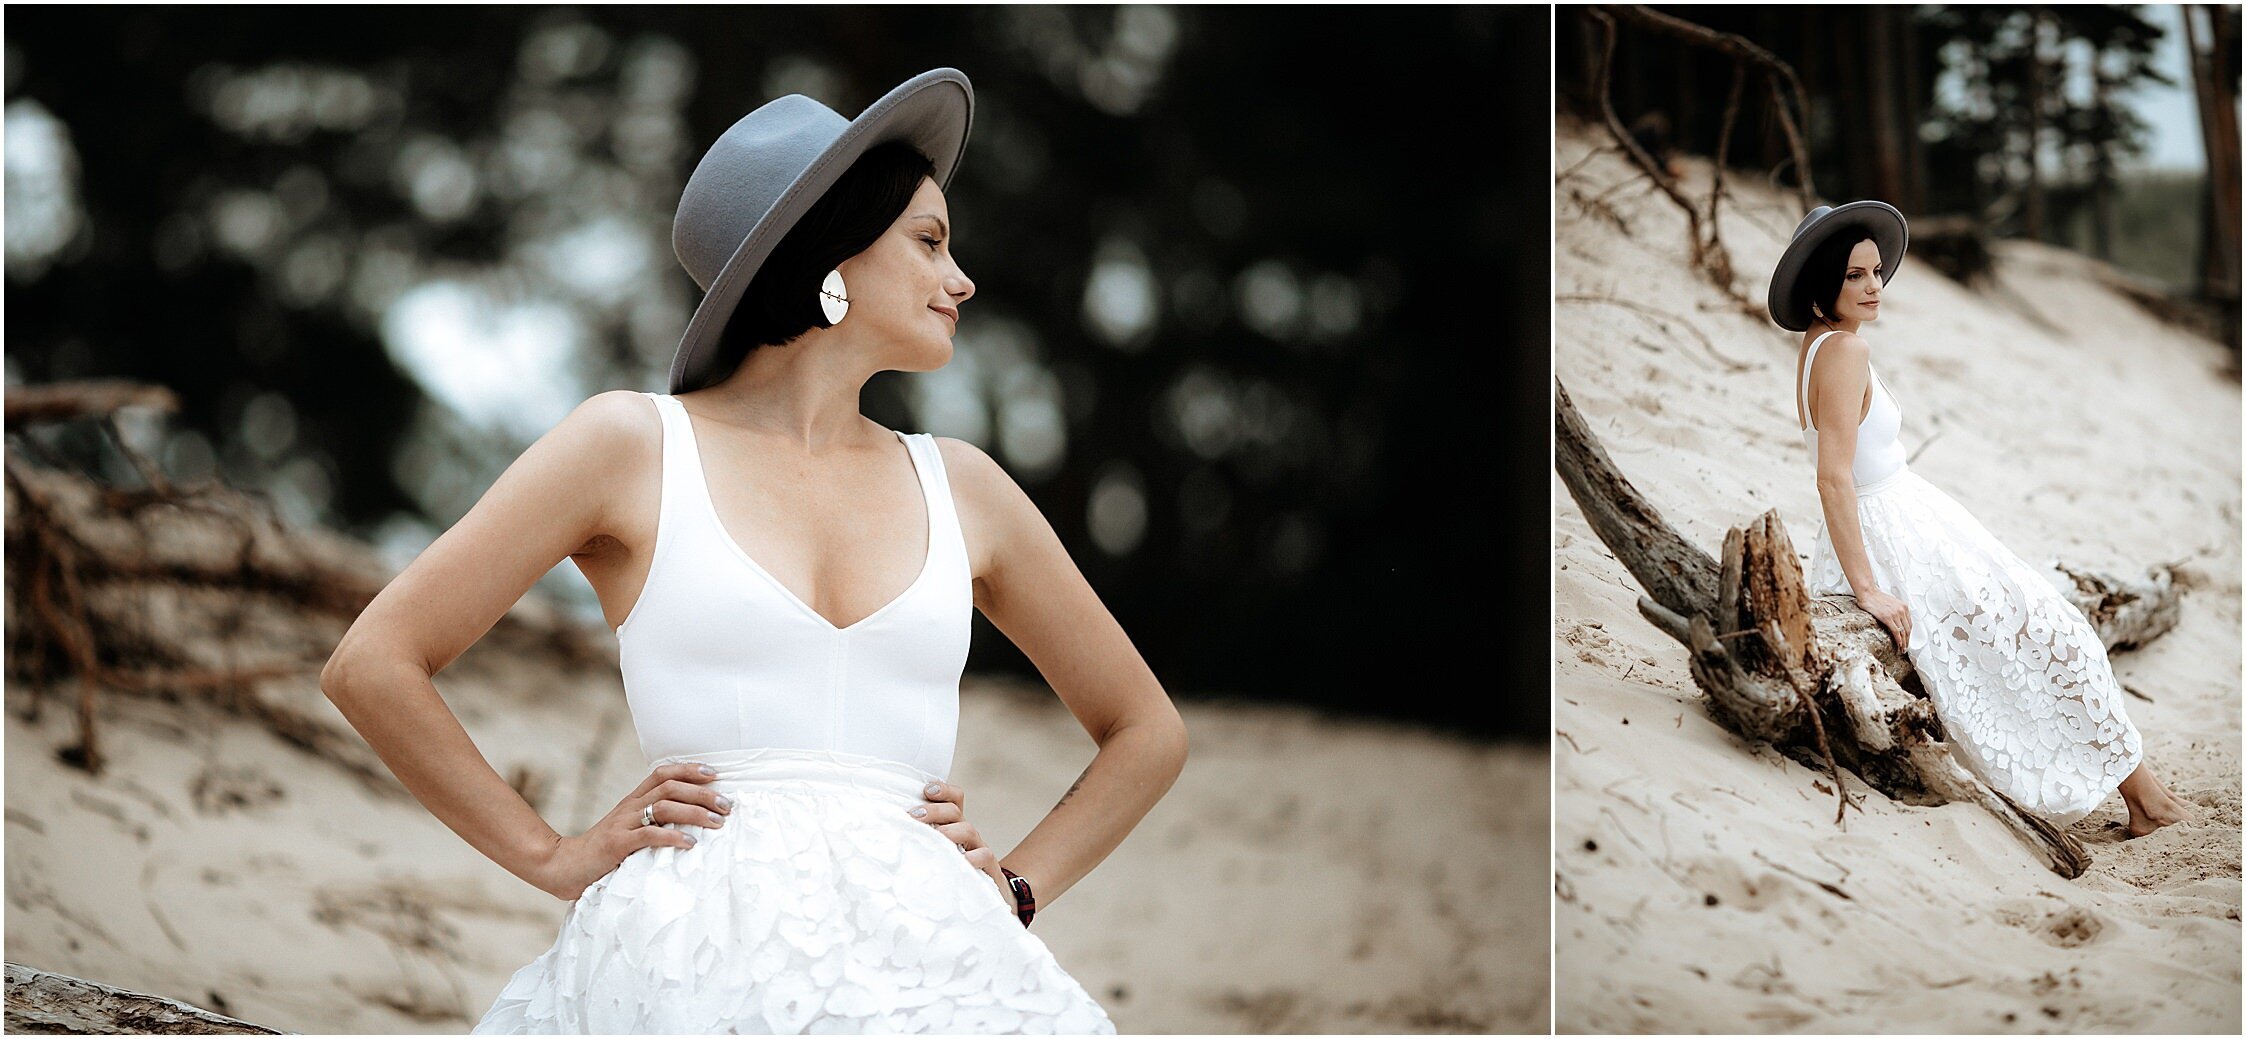 Zanda+Auckland+wedding+photographer+romantic+couple+portrait++white+sand+dunes+Europe+Latvia+New+Zealand_12.jpeg